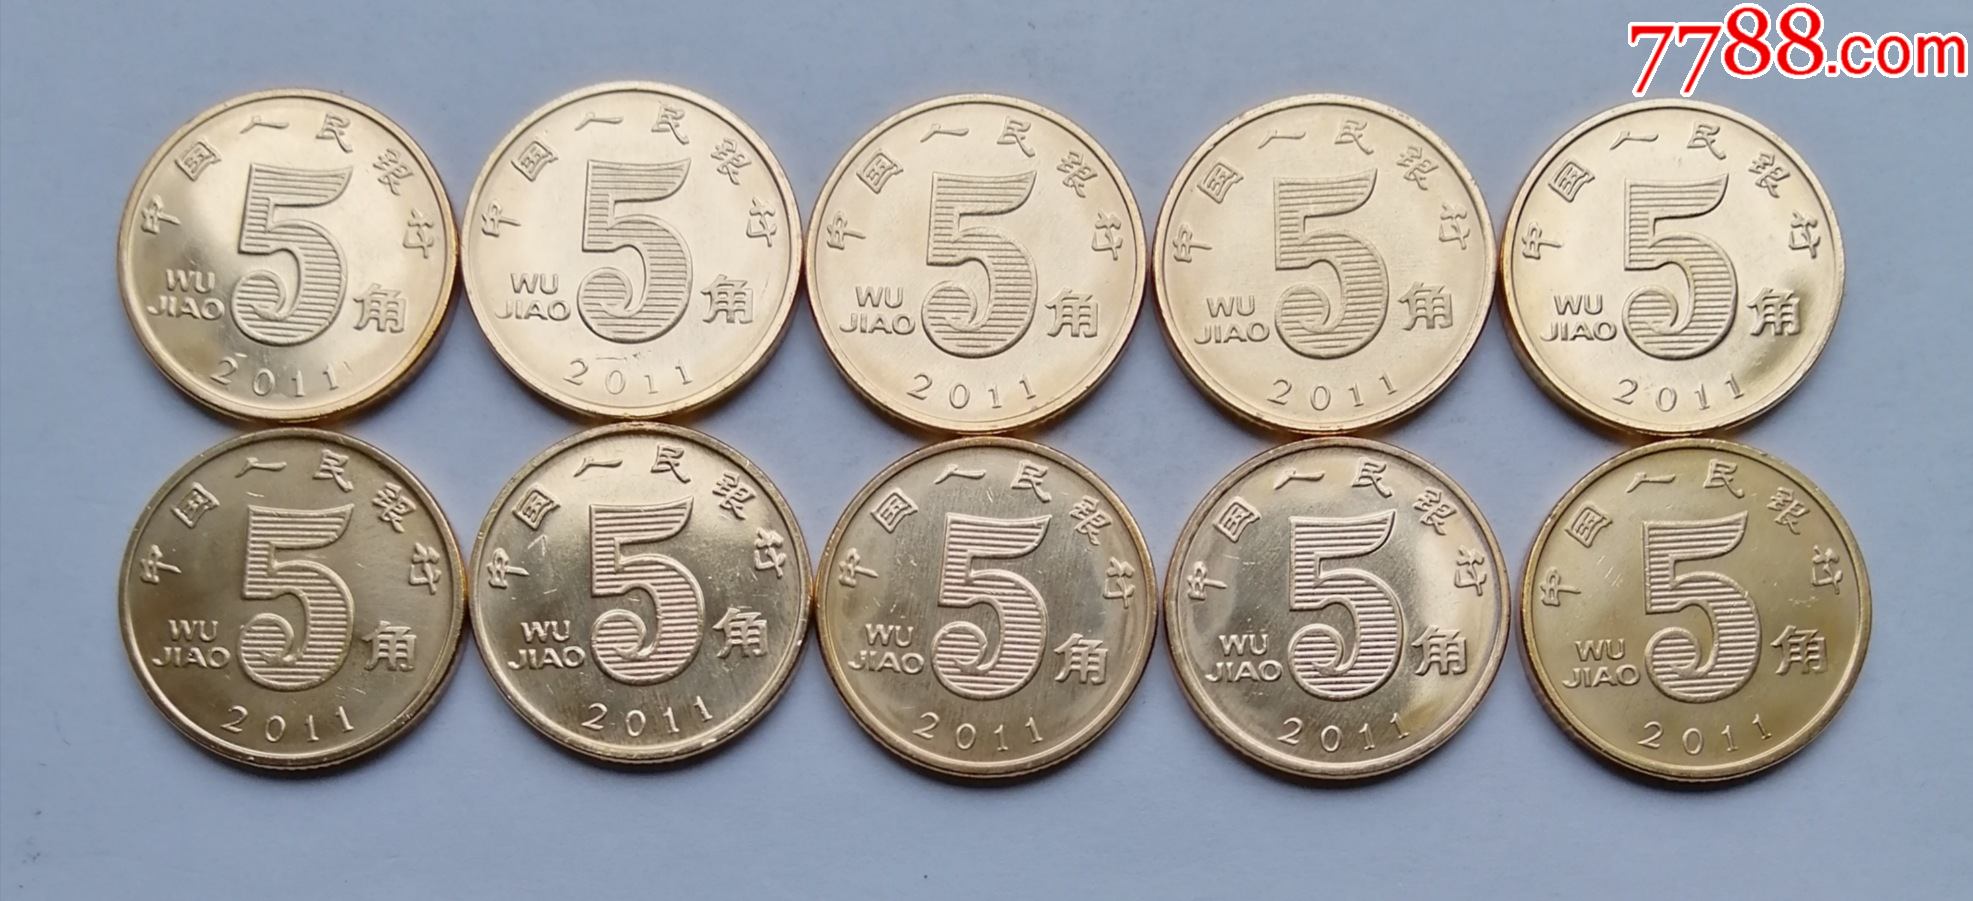 2011年5角荷花卷拆硬币10枚